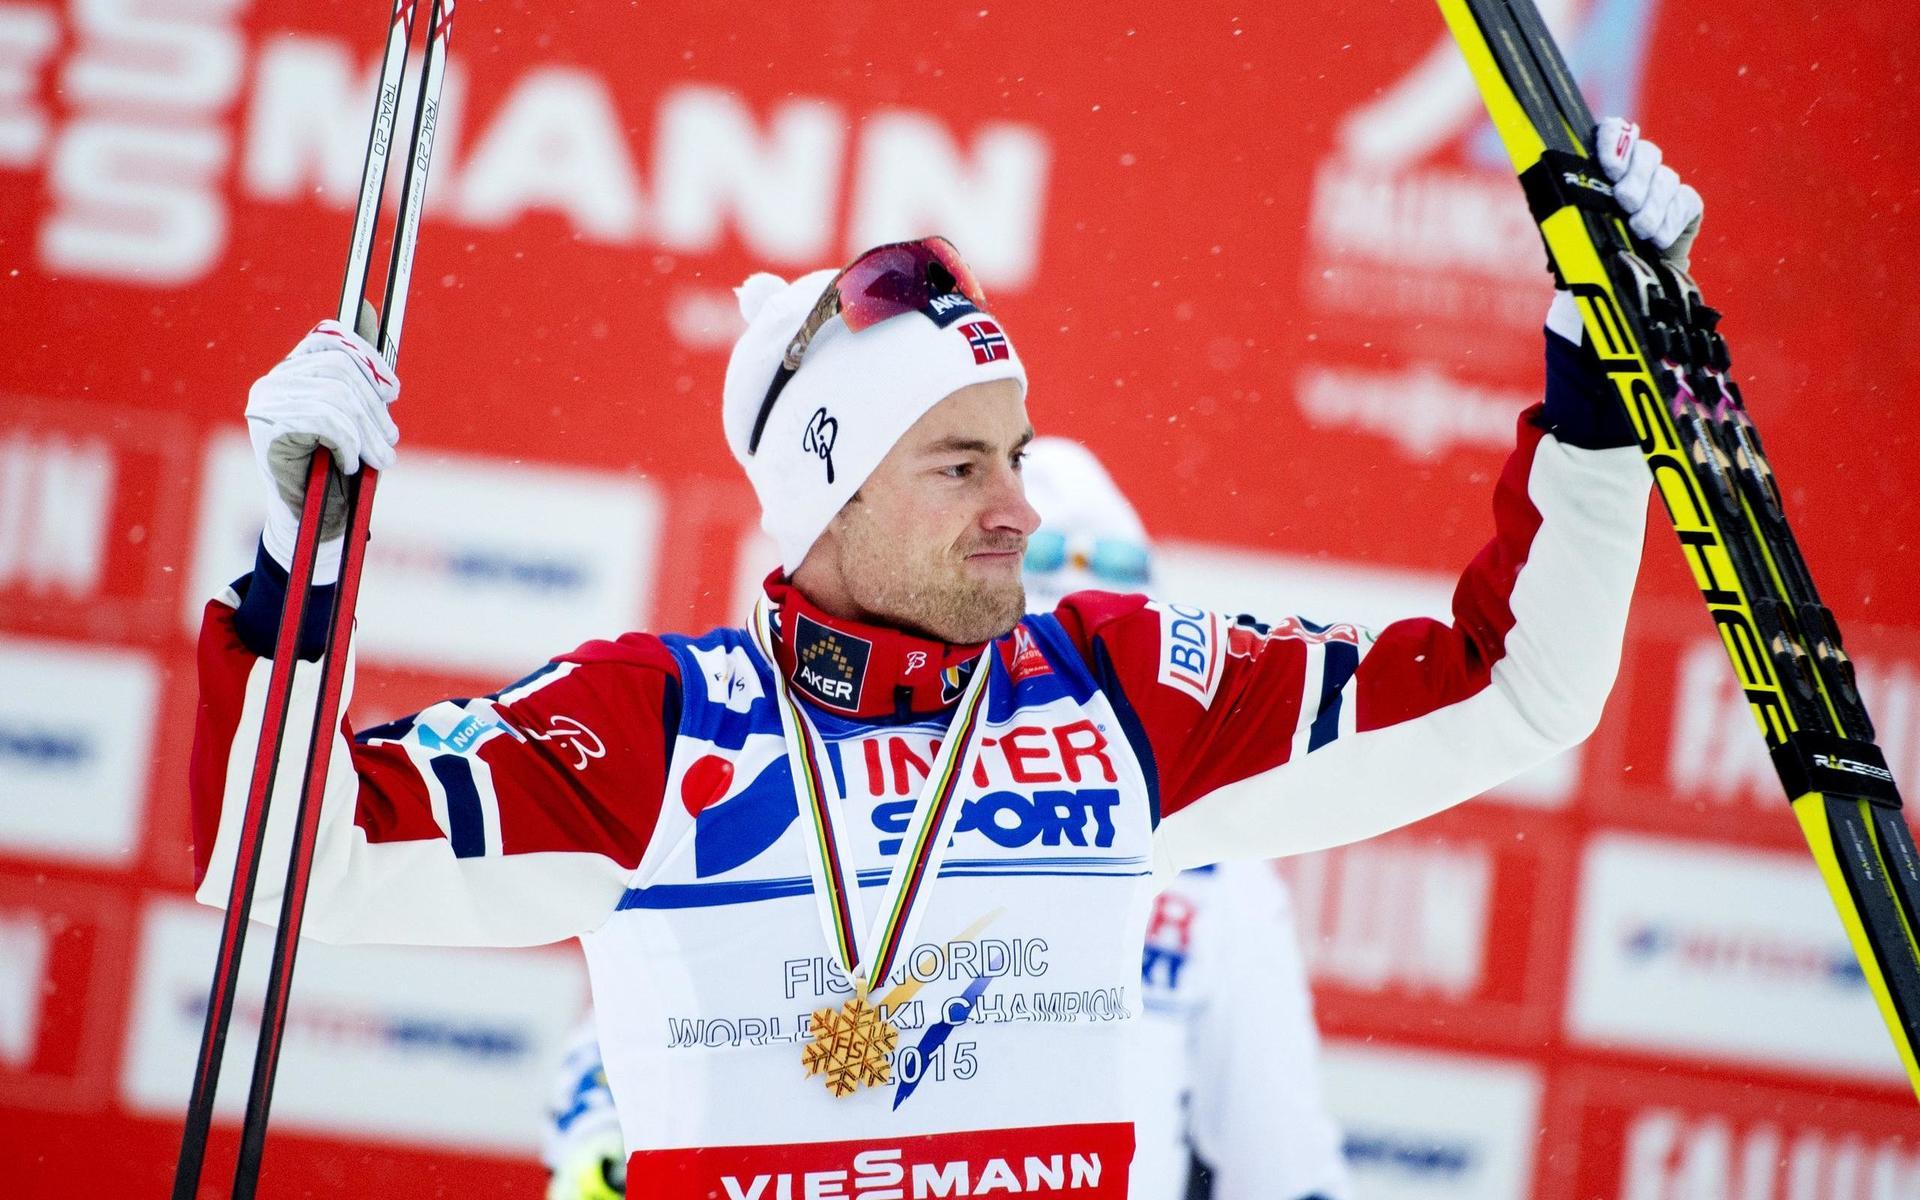 2015 vann Northug VM-guld i Falun. Totalt vann han 13 guldmedaljer i VM-sammanhang. Flest någonsin.